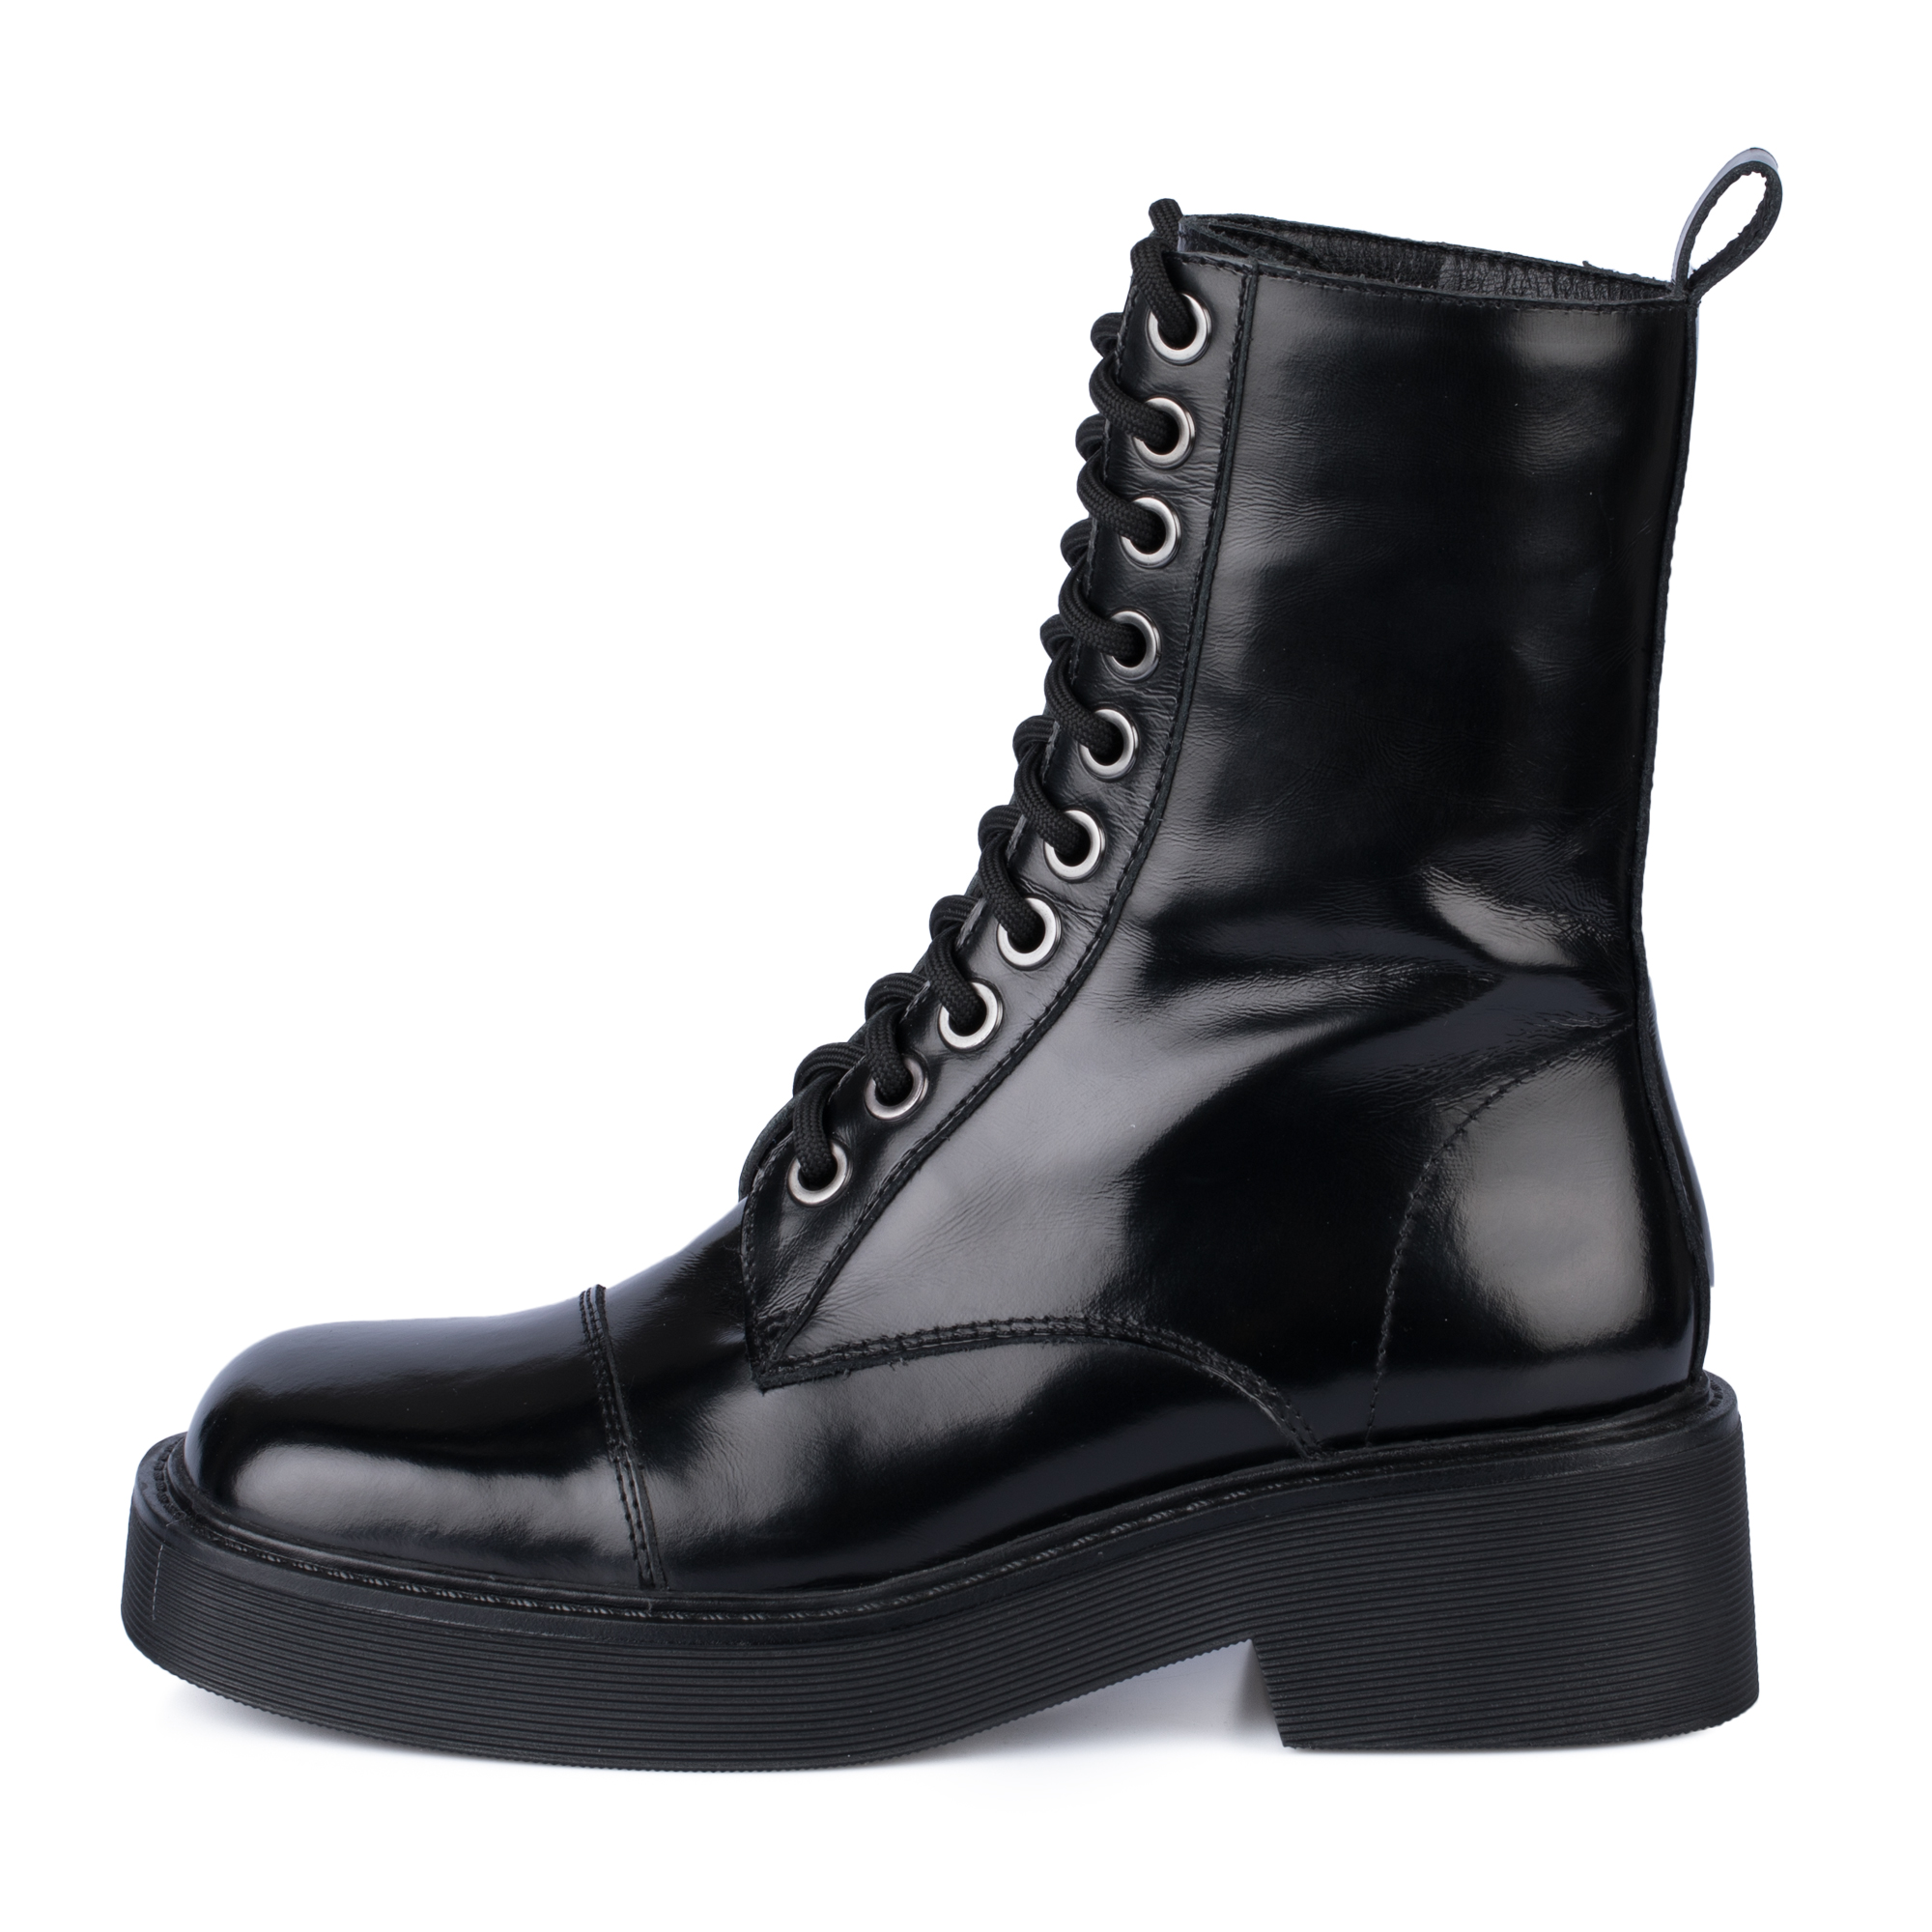 Ботинки Thomas Munz 126-400A-2102, цвет черный, размер 38 - фото 1